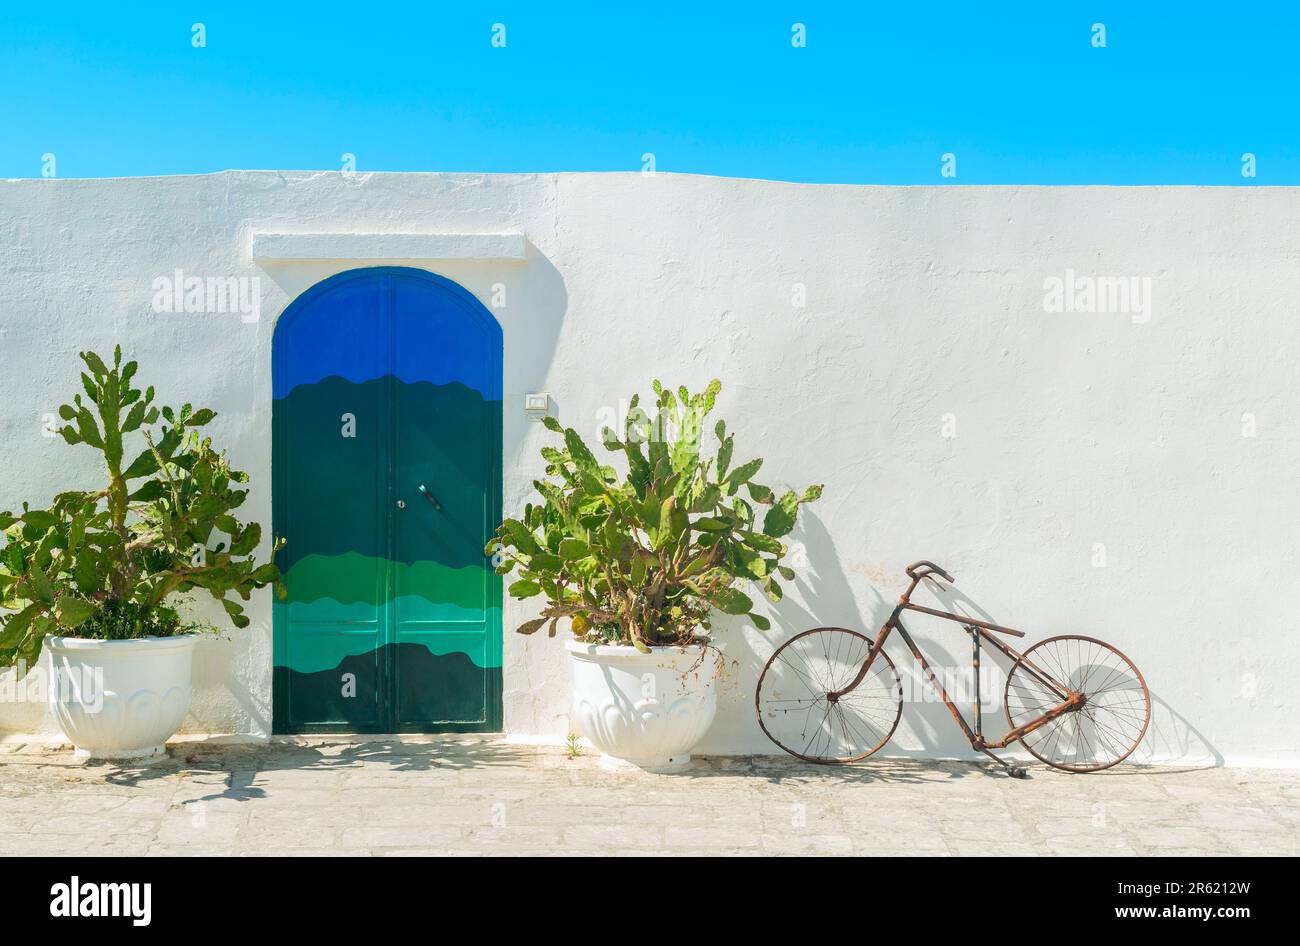 La porte bleue avec cactus et les murs blancs traditionnels de la ville d'Ostuni (Puglia - Italie). Banque D'Images